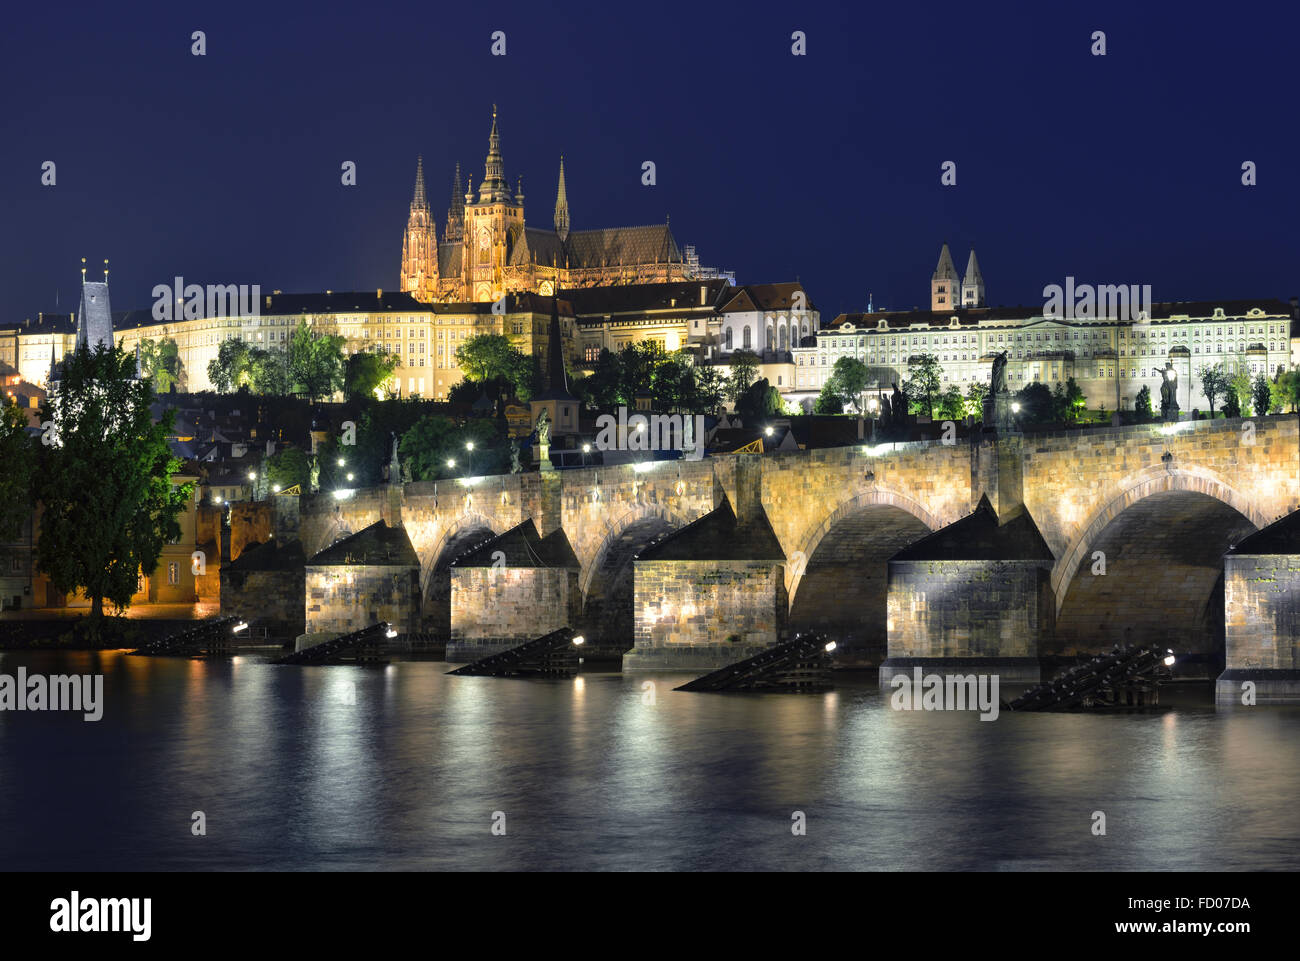 Vltava, Pont Charles et de la cathédrale Saint-Guy la nuit contre un ciel bleu foncé. Karluv Most, Prazsky hrad. Prague. République tchèque Banque D'Images